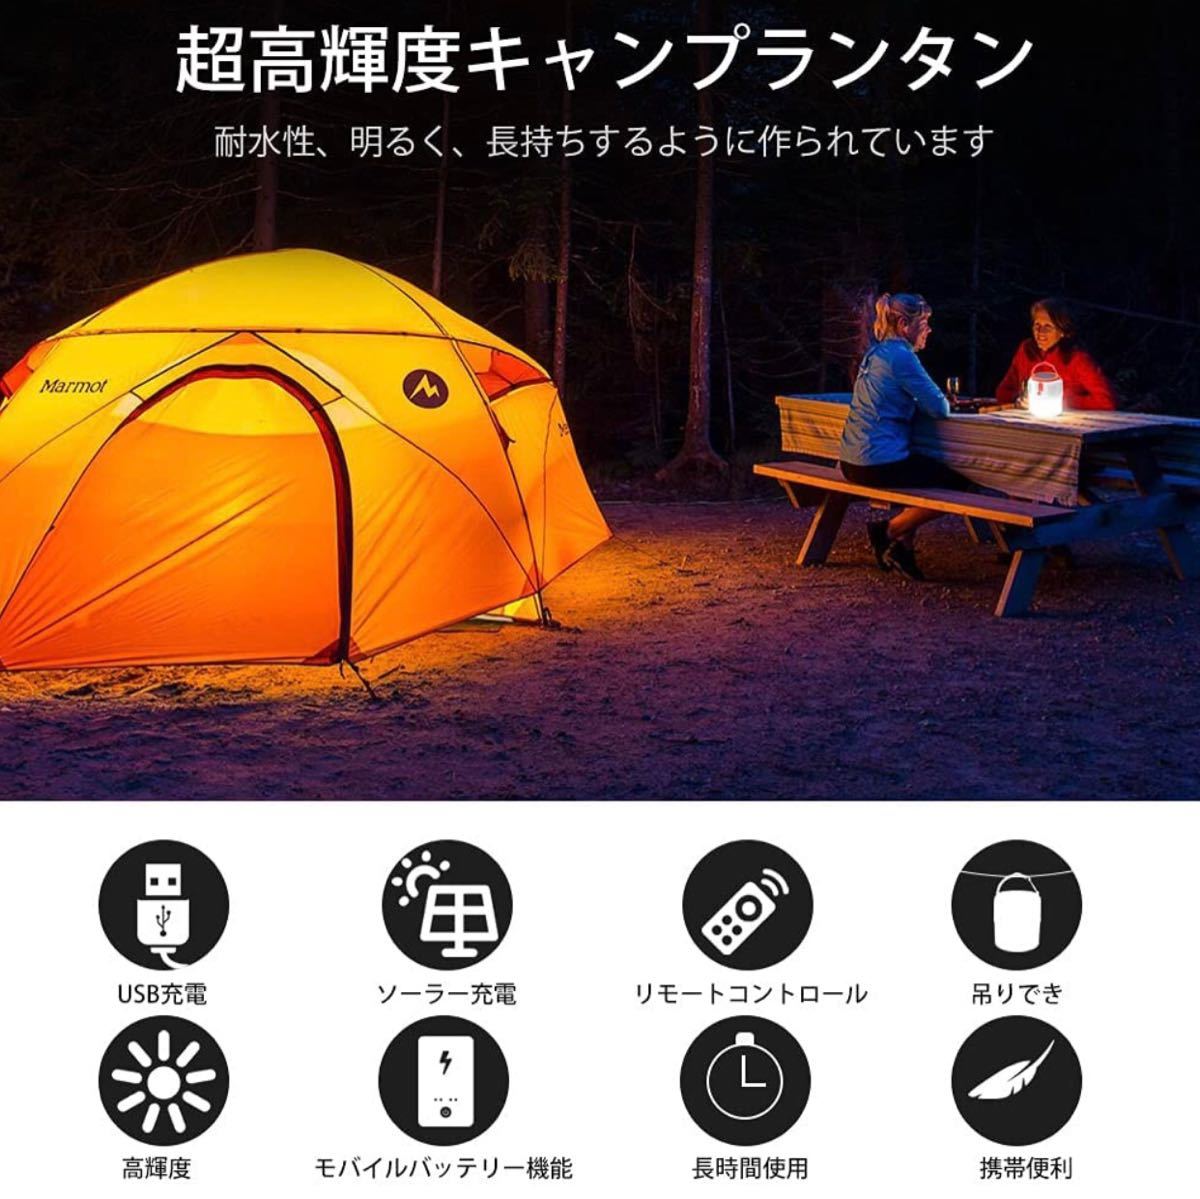 キャンプランタン LEDランタン テントライト 高輝度 USB充電式 携帯型 5つ点灯モード キャンプライト 2 In 1充電式 